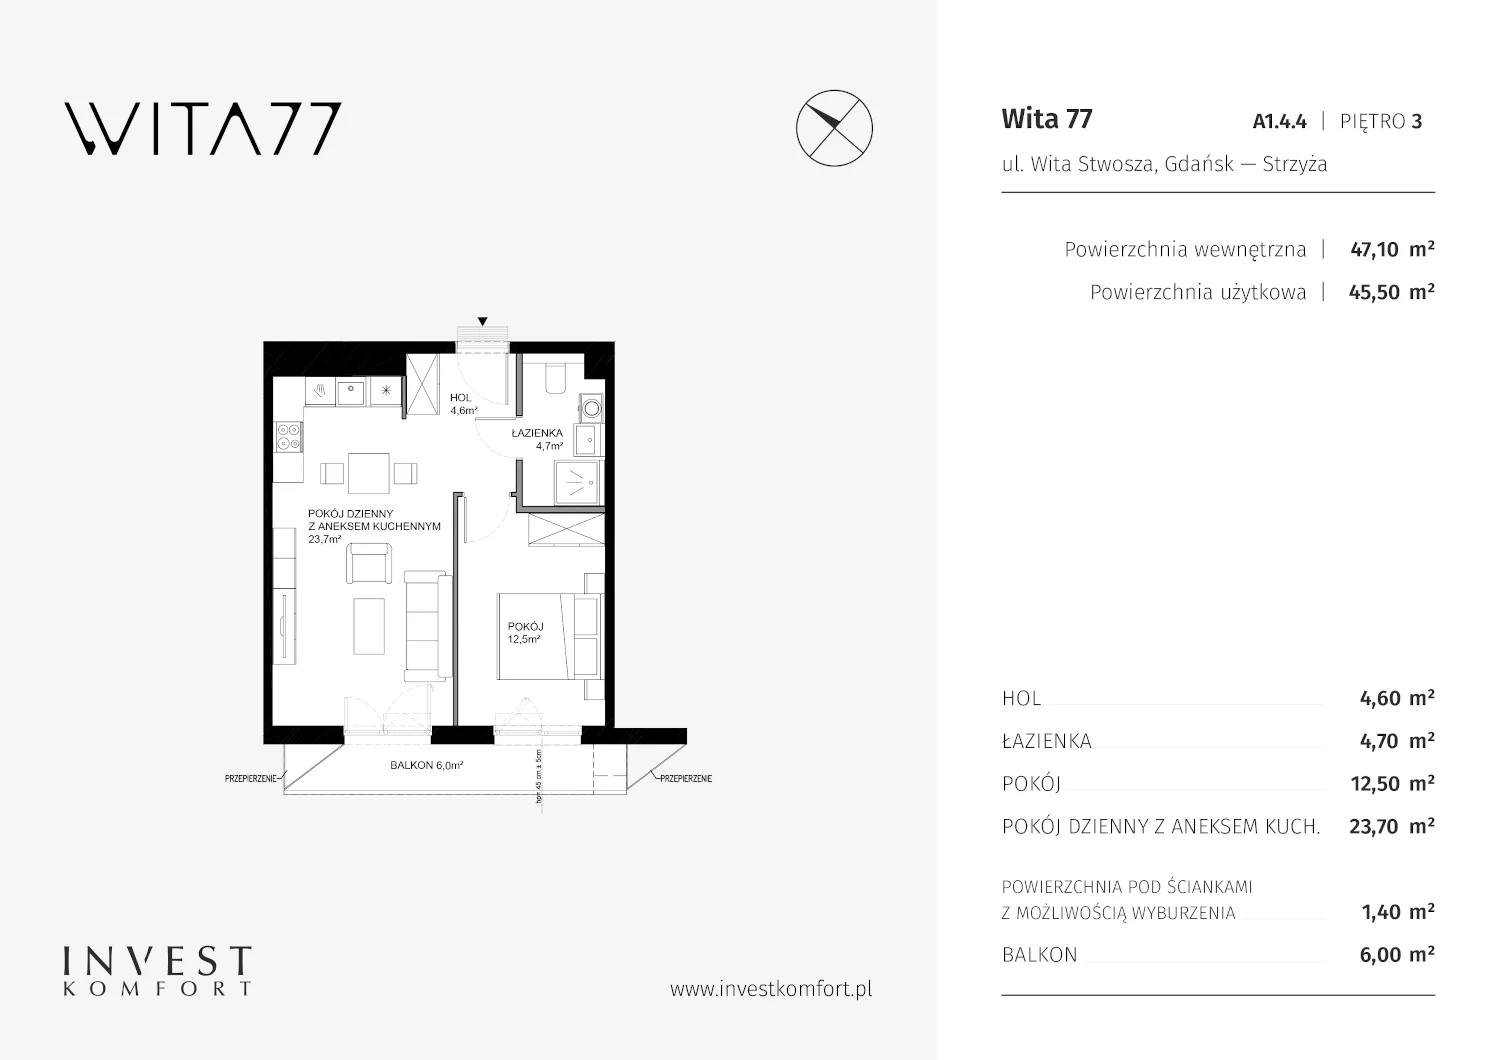 Apartament 47,10 m², piętro 3, oferta nr A1.4.4, Wita 77, Gdańsk, Strzyża, ul. Wita Stwosza 77